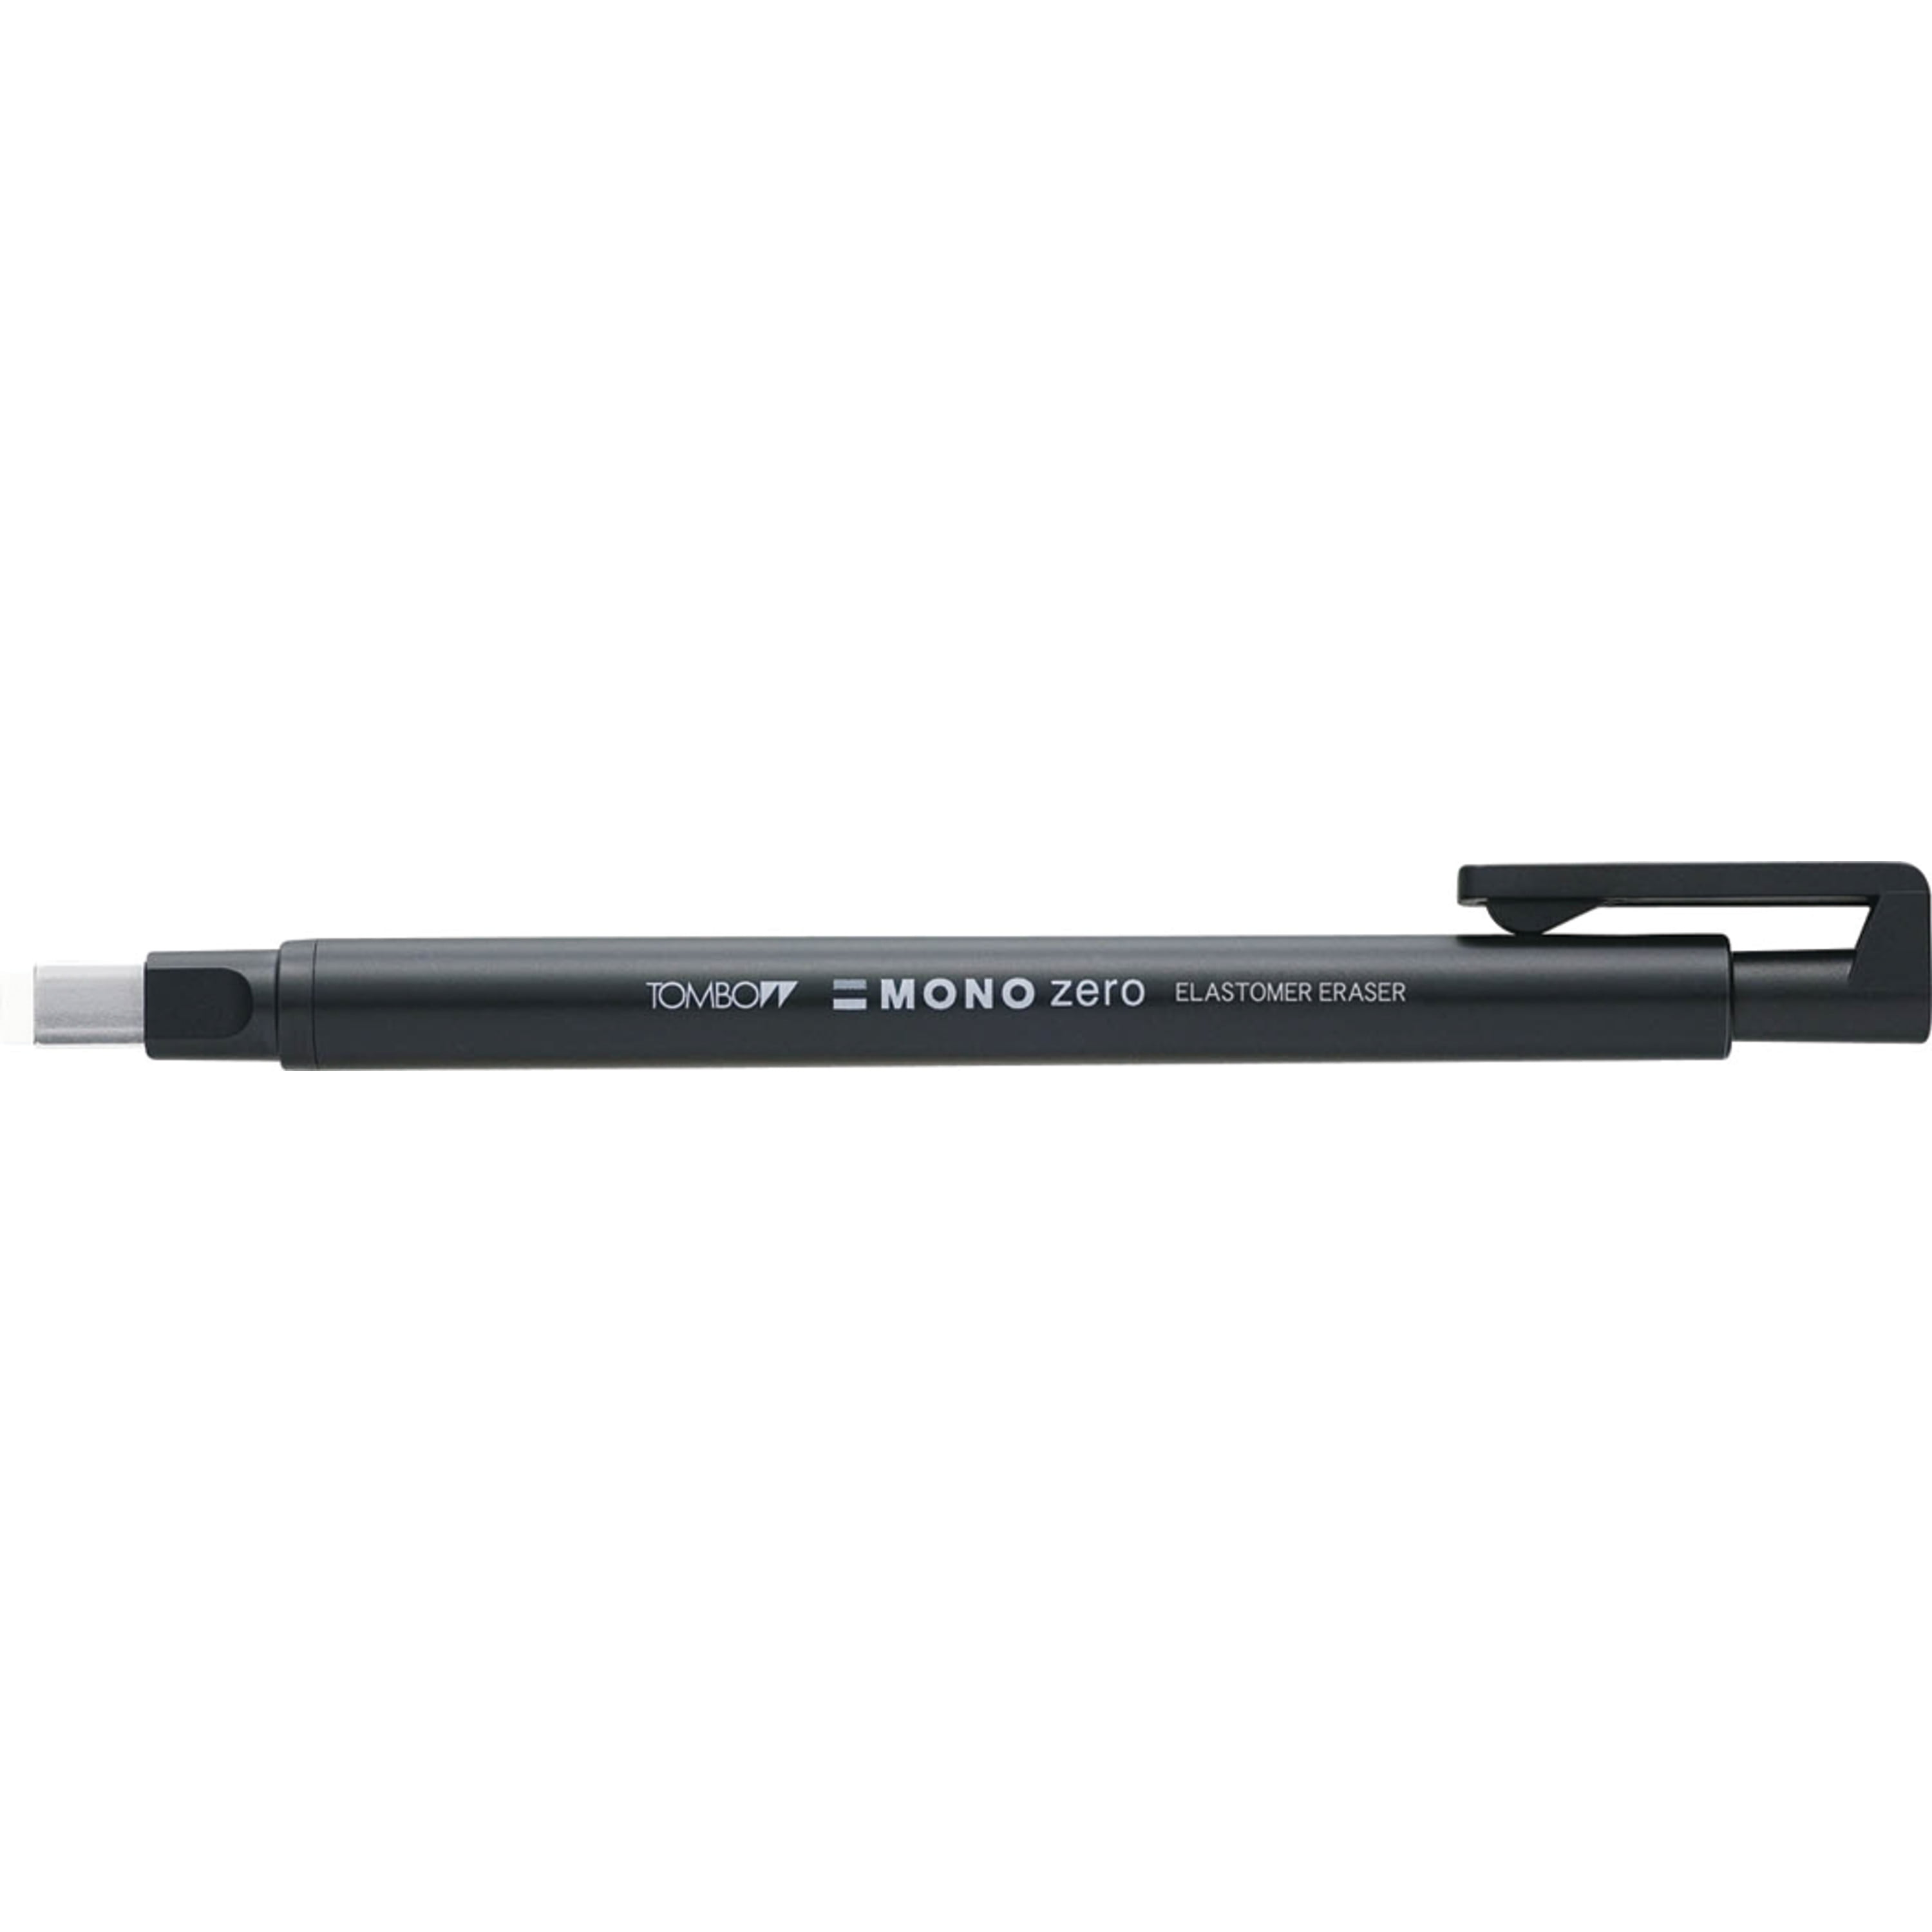 Silver Body Tombow Mono Zero Circular Shape Elastomer Eraser Pen 2 Refills 